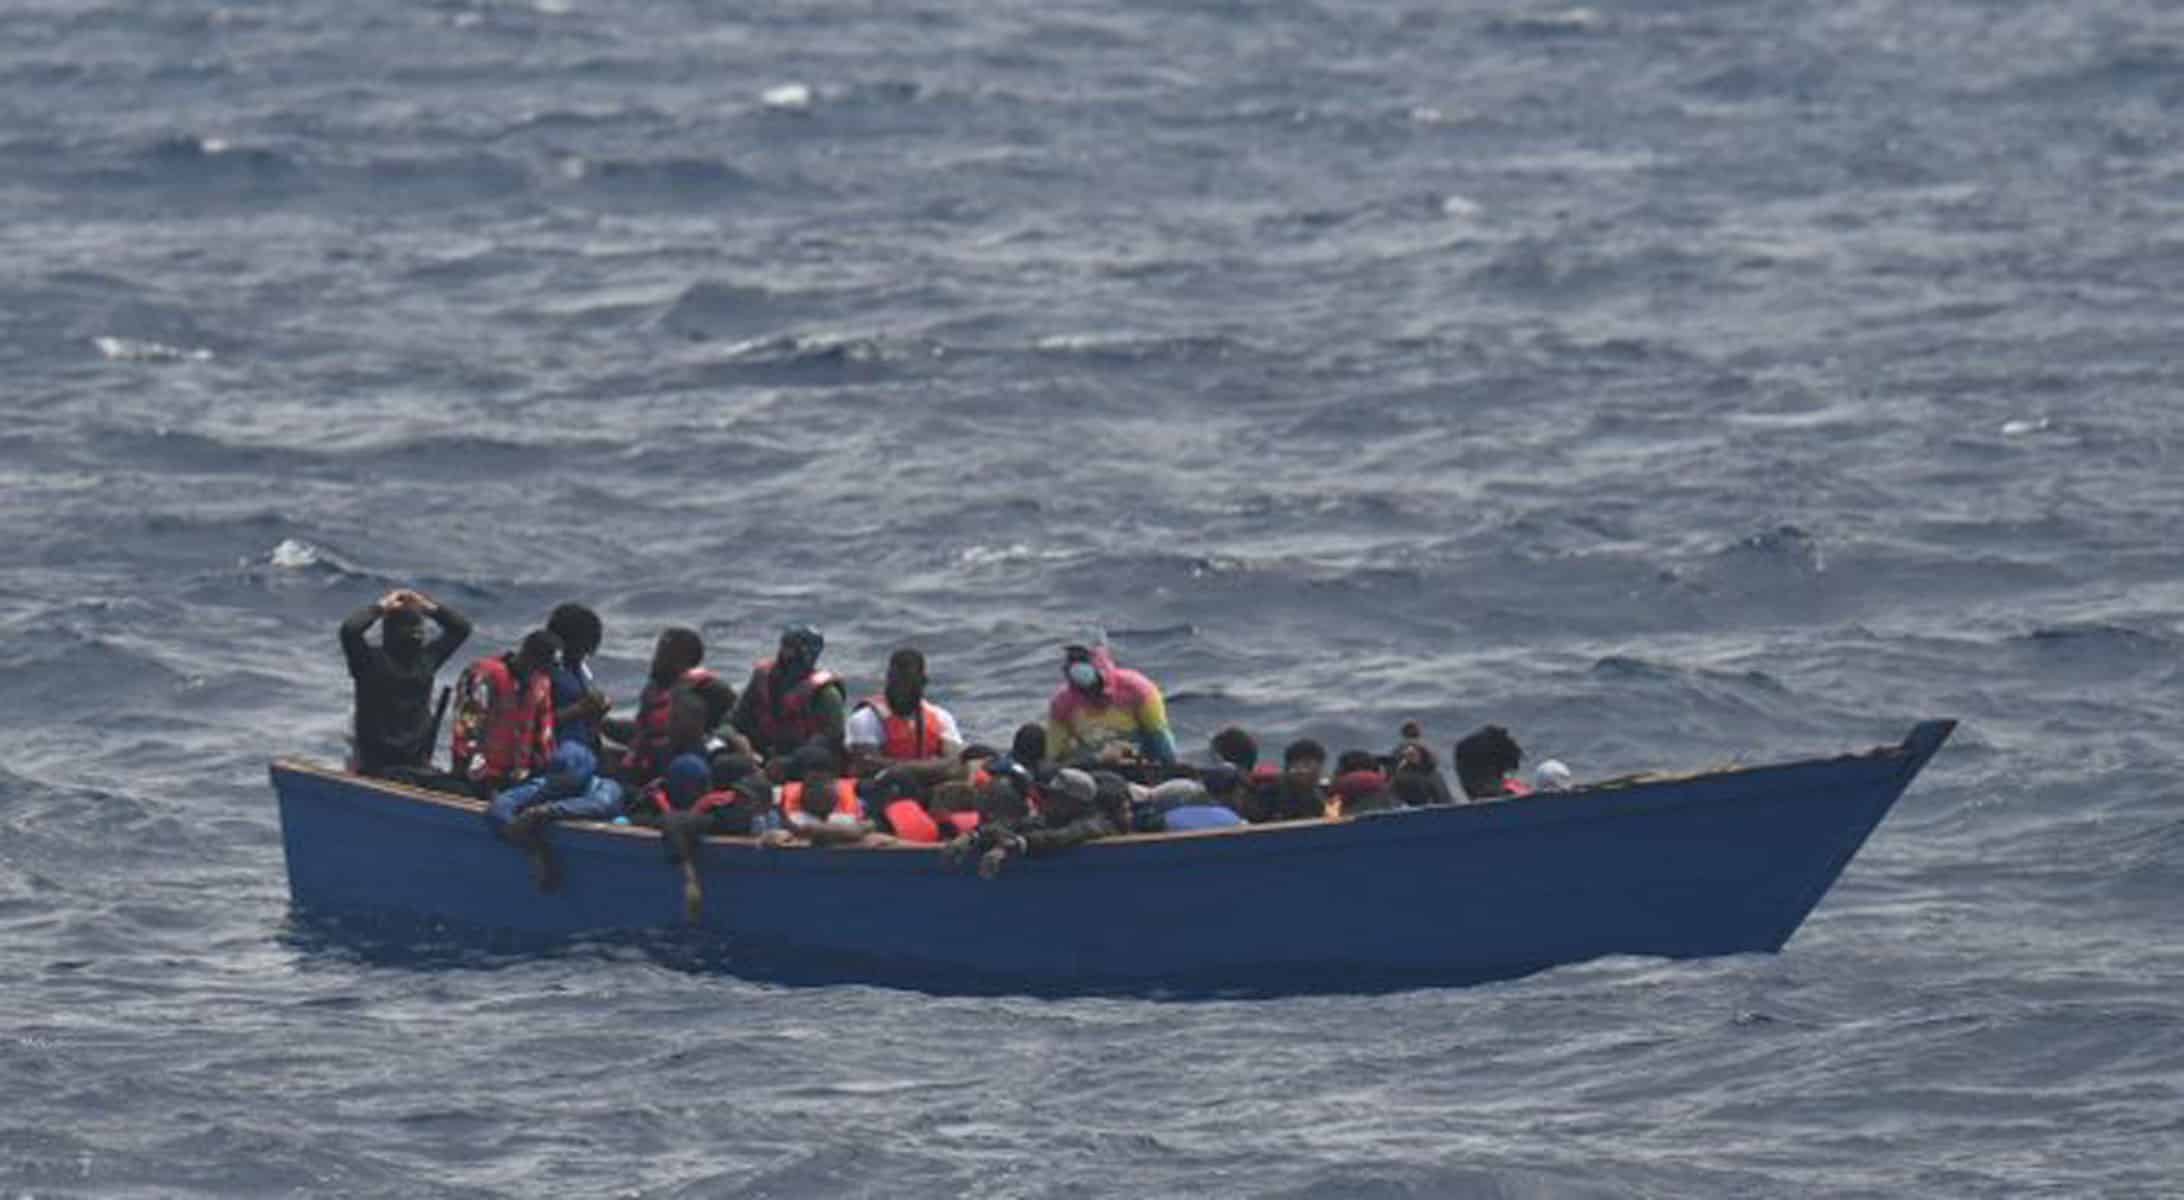 estados unidos envia condolencias por los migrantes naufragados